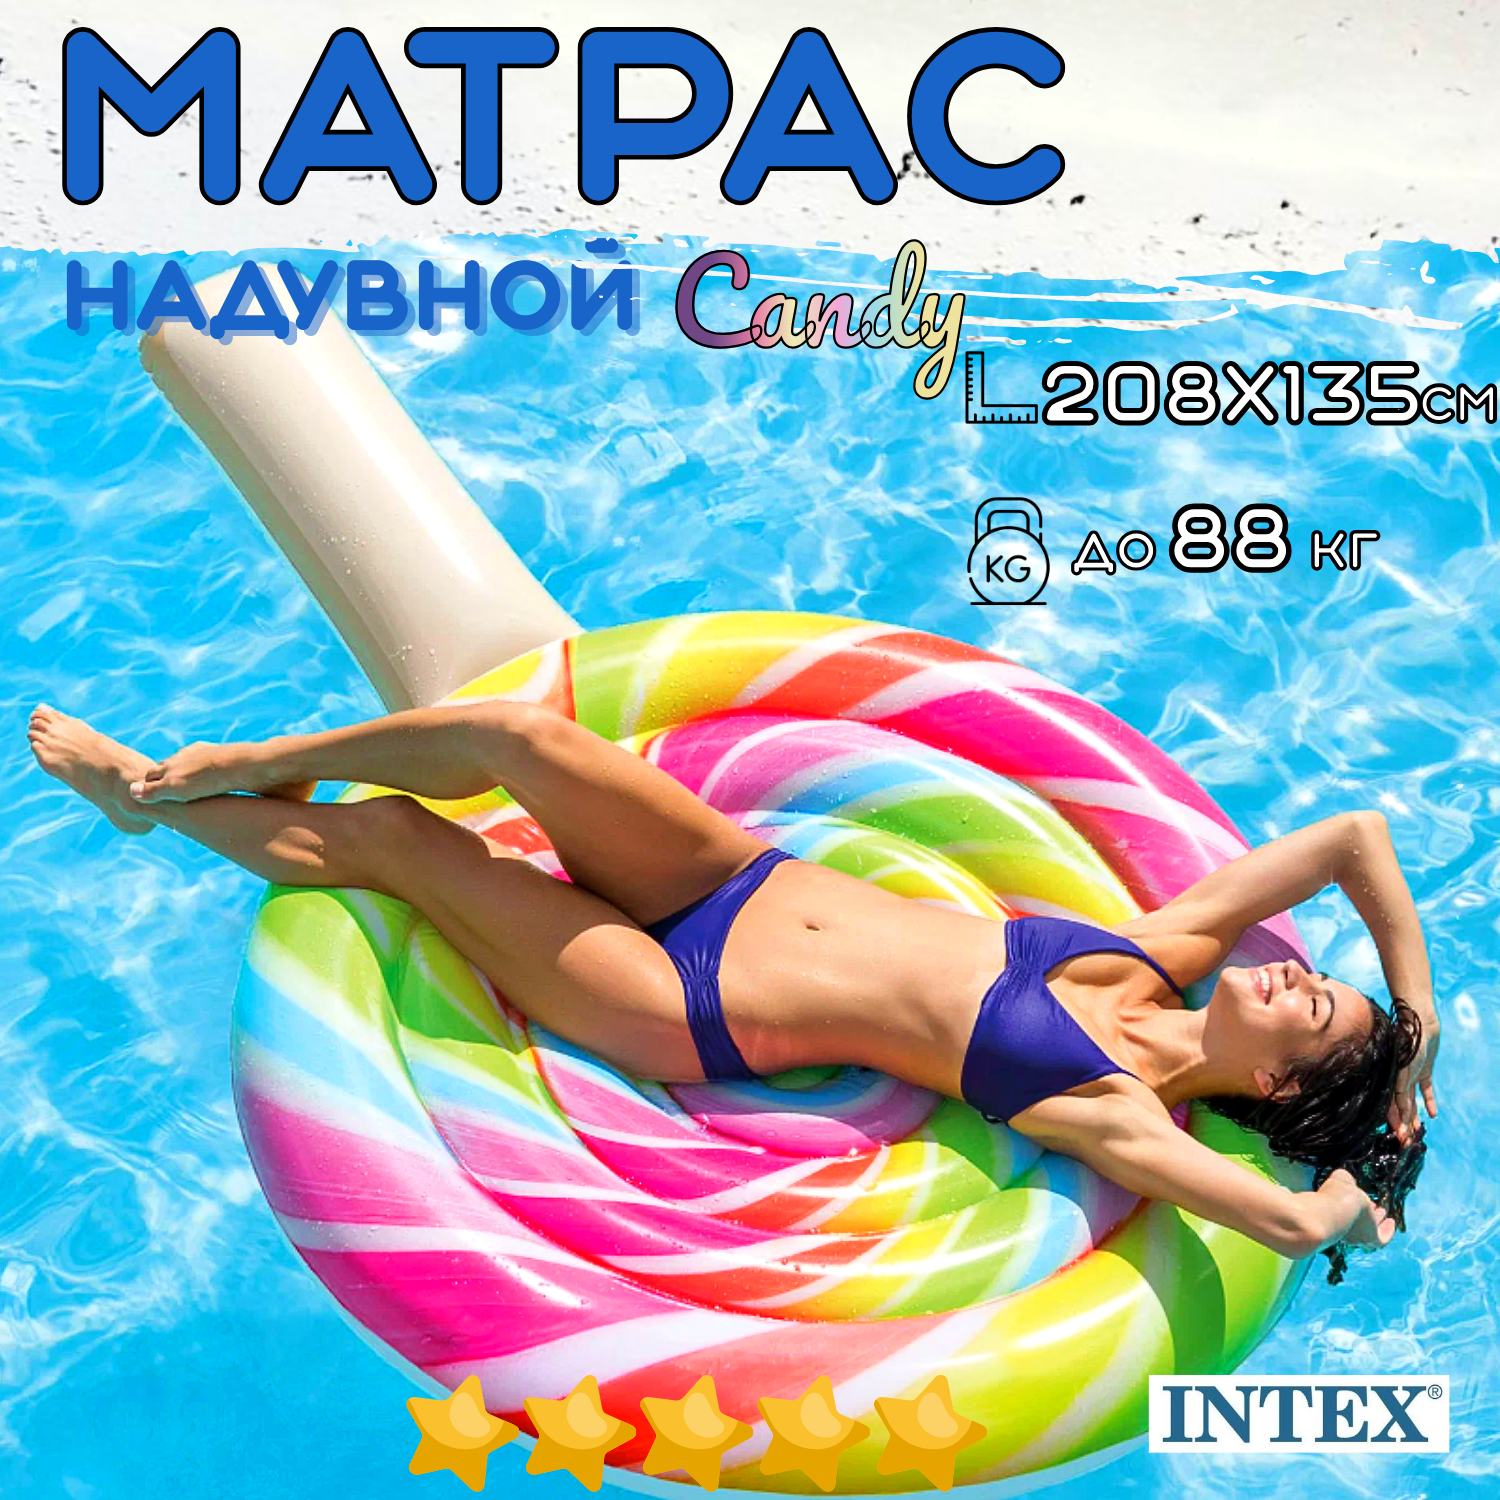 Матрас надувной пляжный INTEX Candy 208х135 см, одноместный, нагрузка до 88 кг, для взрослых и детей от 9 лет, без насоса, цвет яркий / 1 шт.